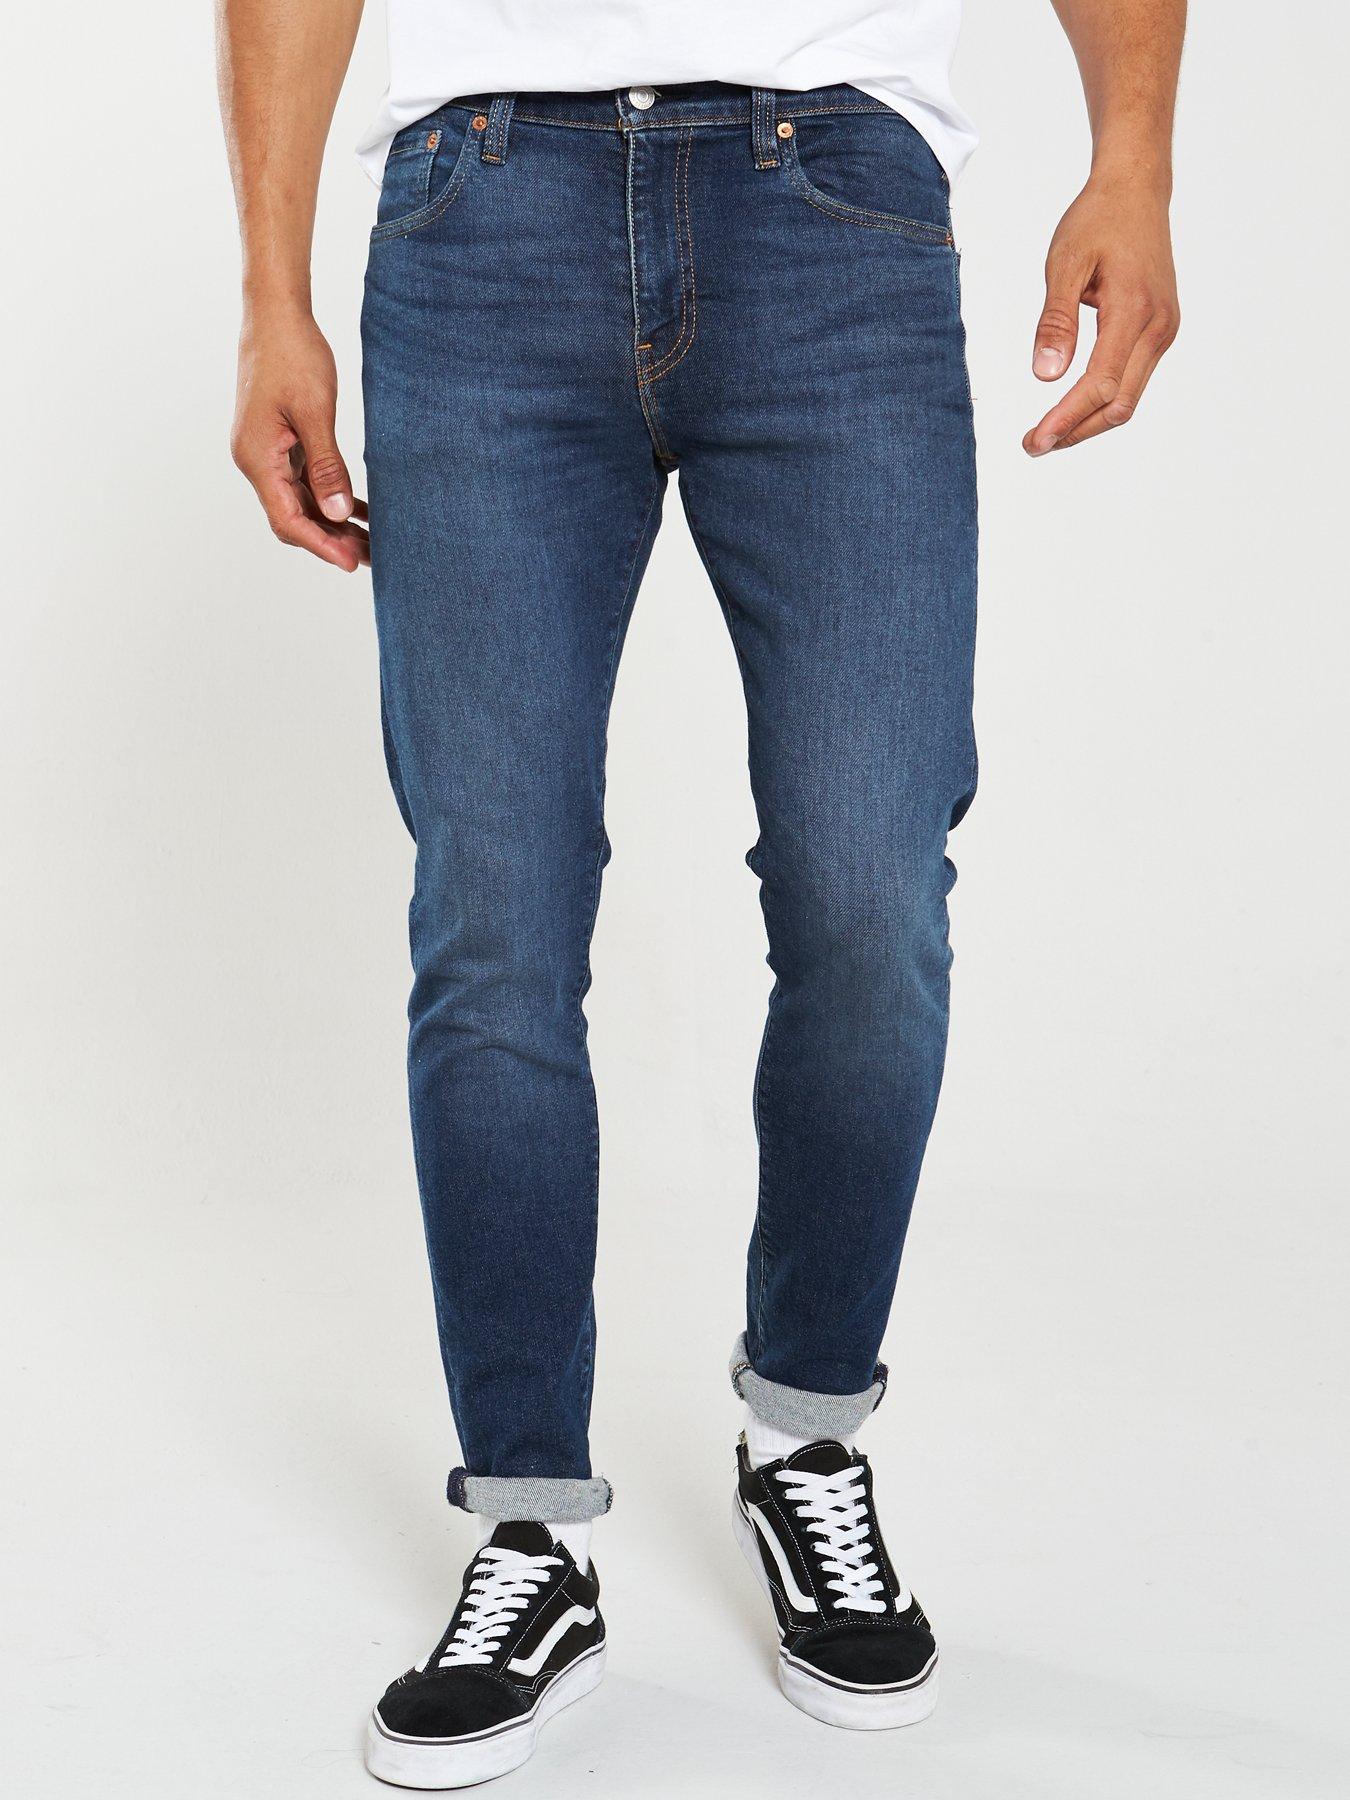 levis 512 blue jeans